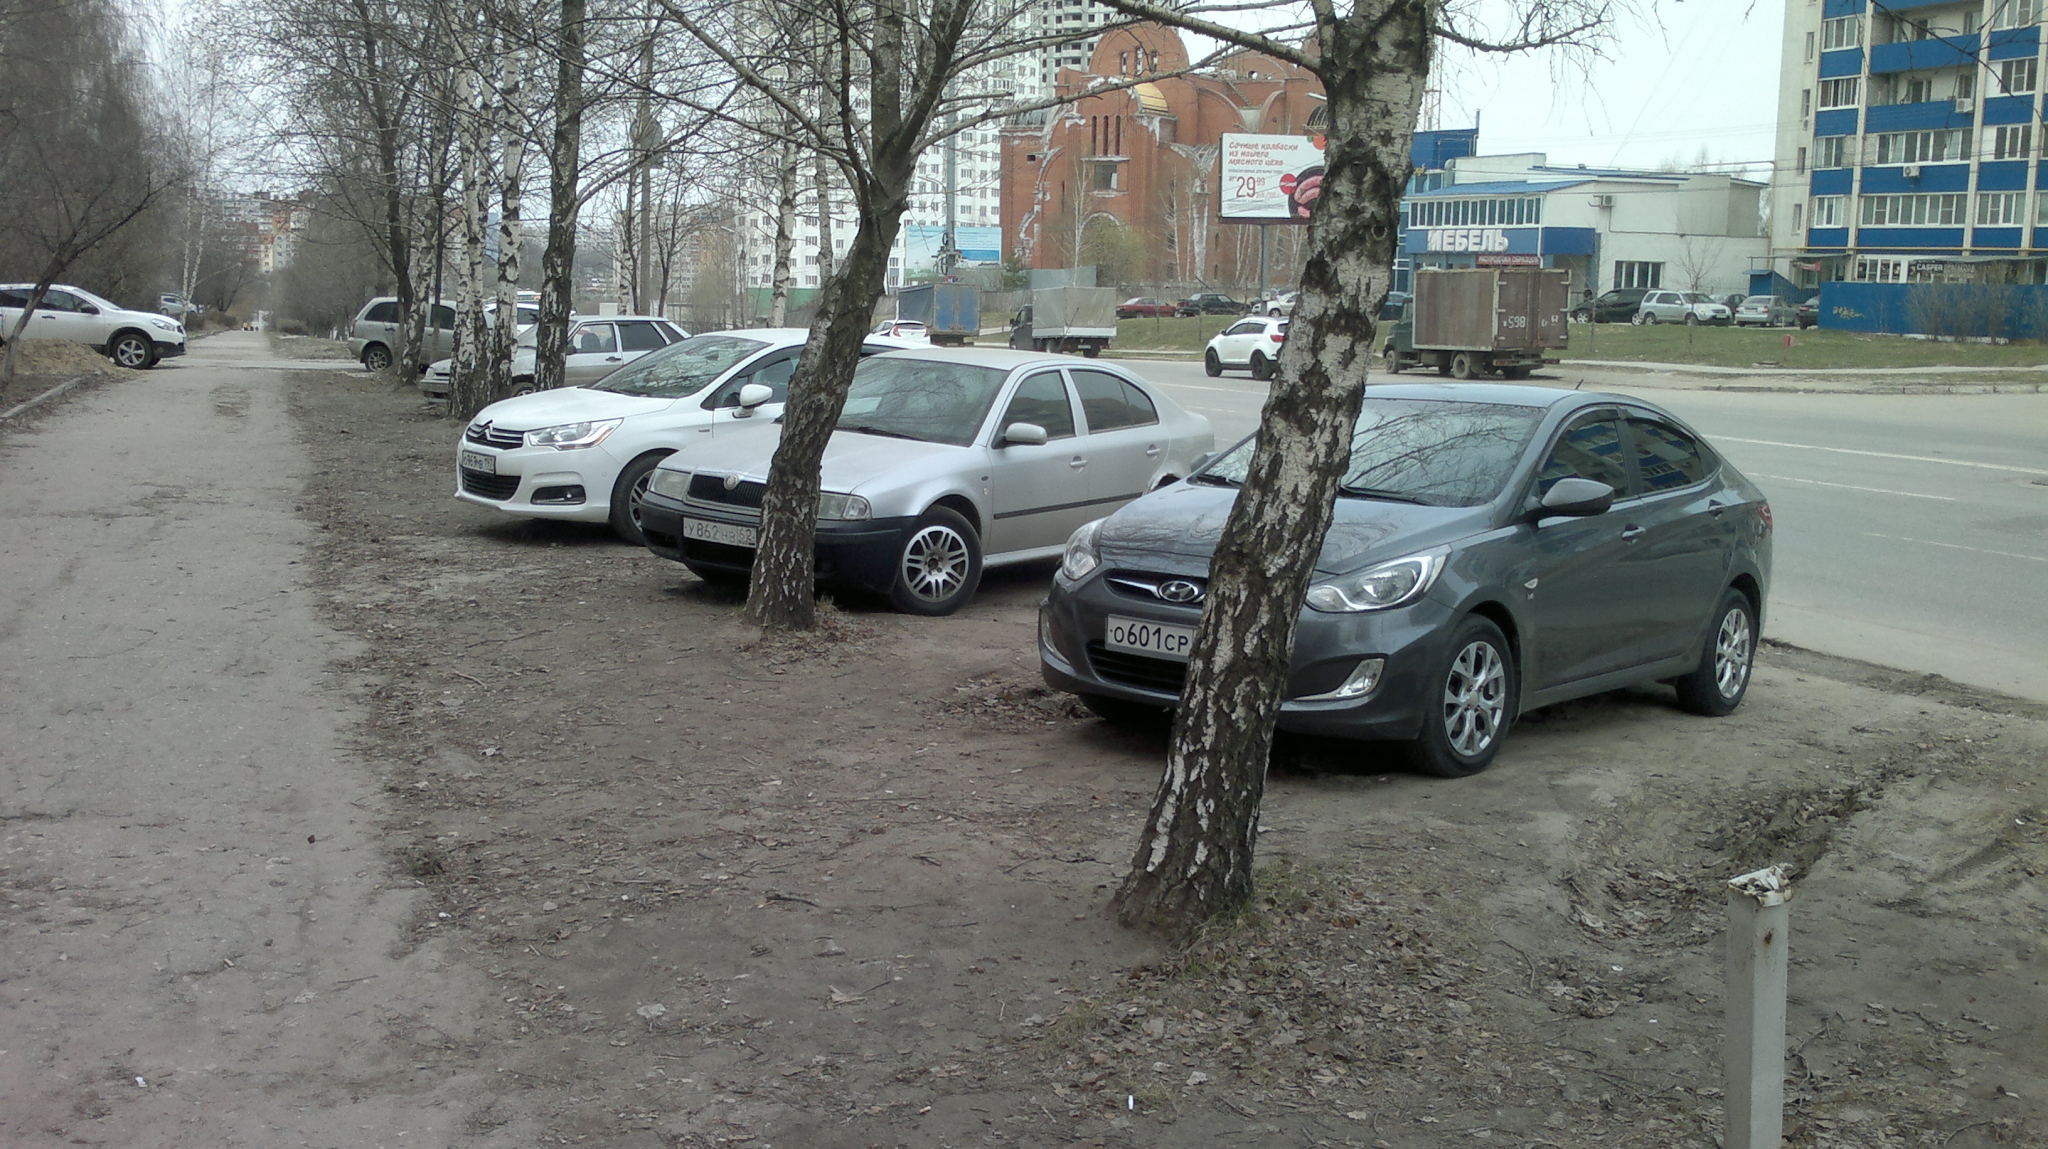 Безобразие: автомобилисты на Новосёлов постоянно паркуются на газоне